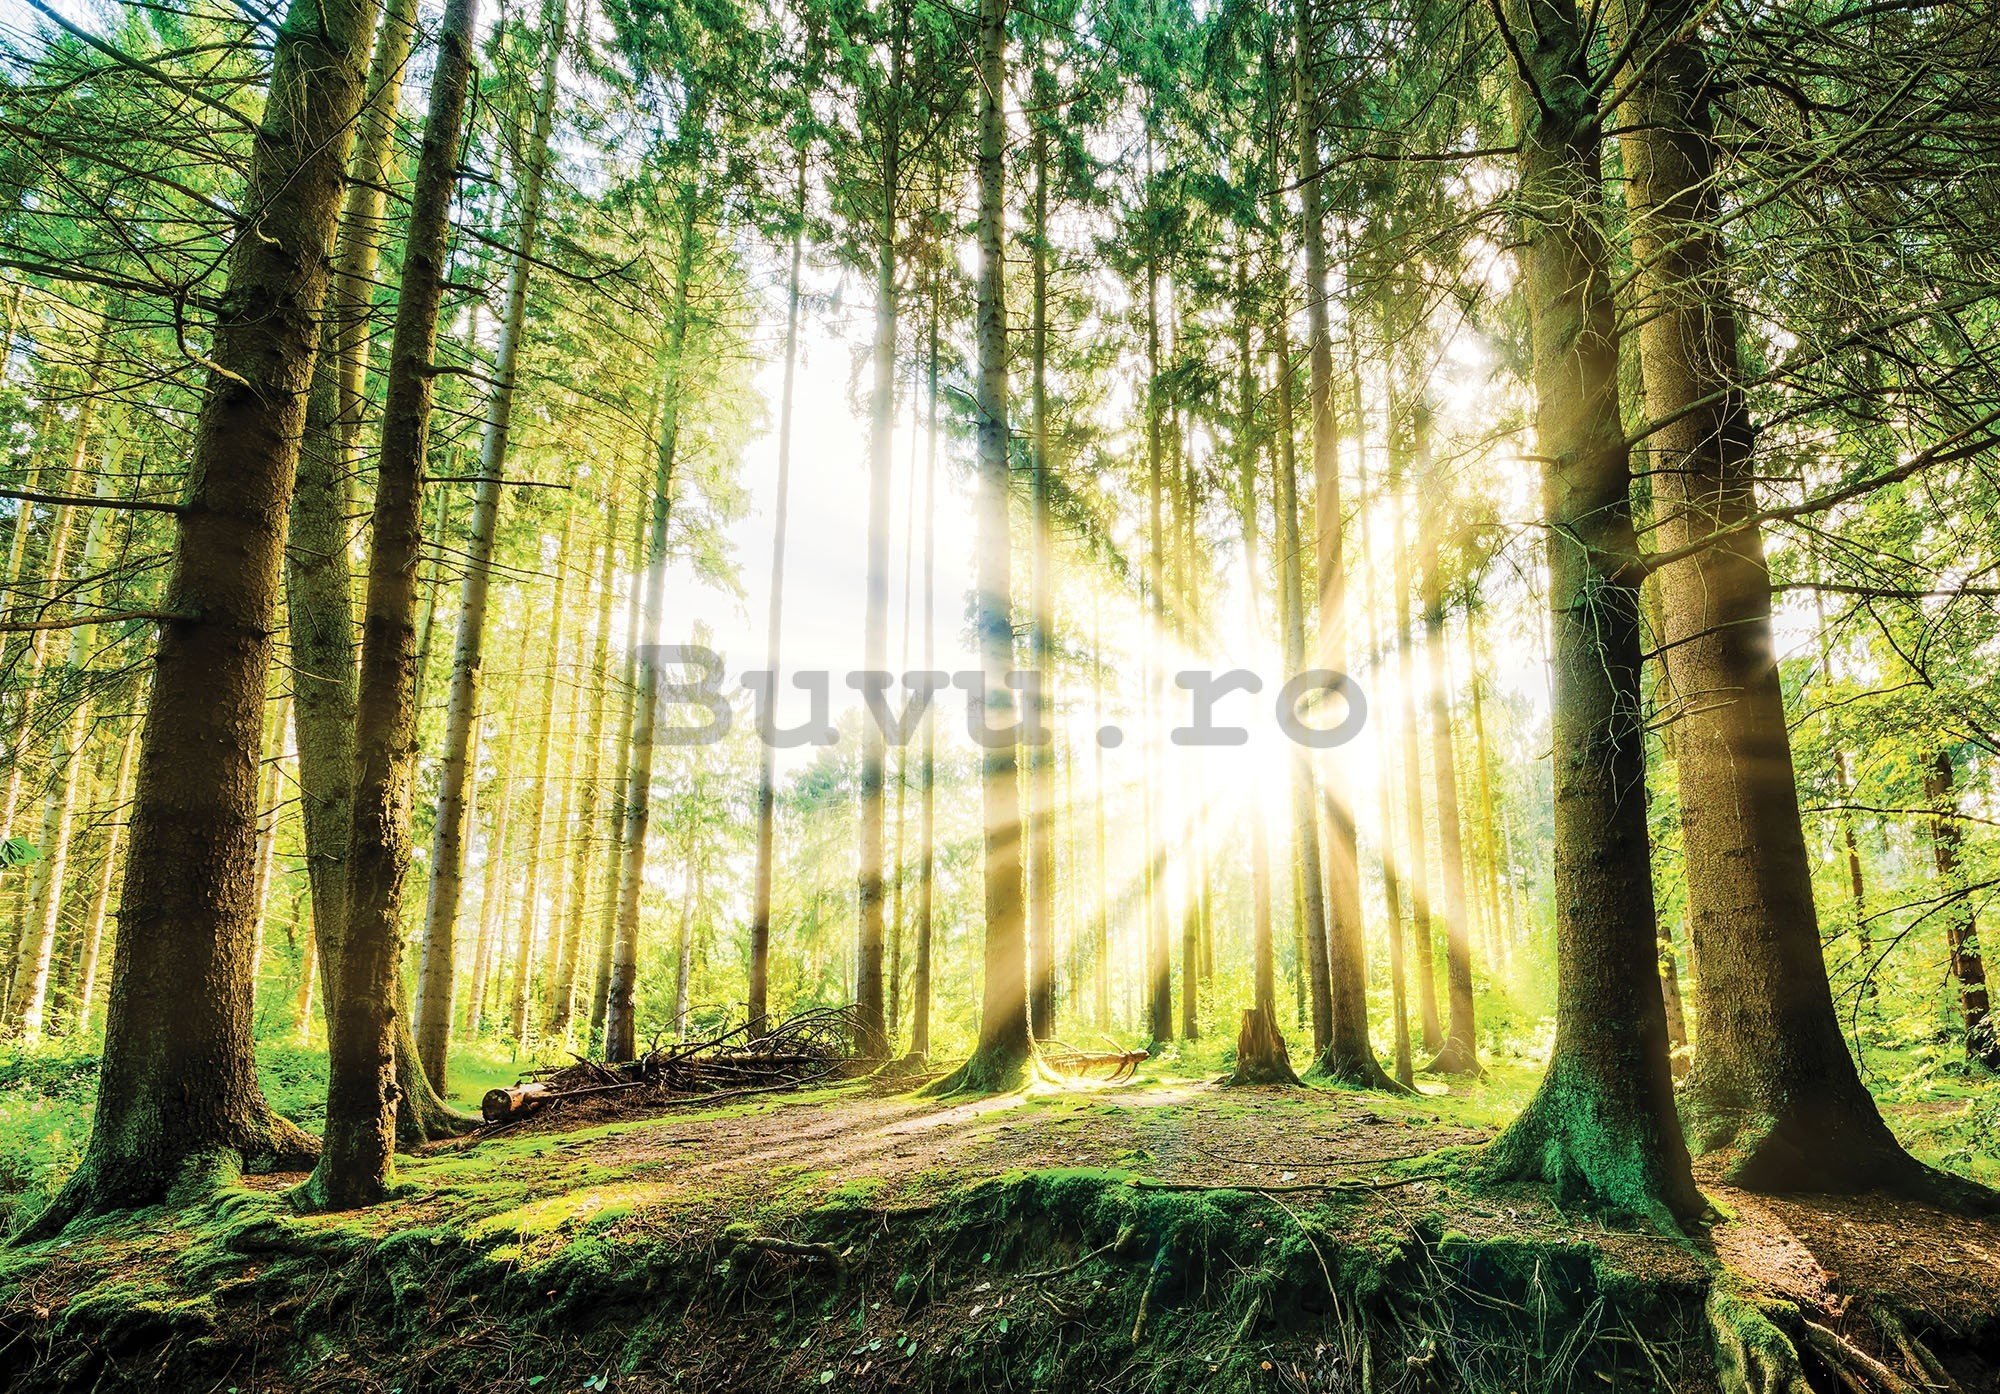 Fototapet vlies: Soarele în pădure (2) - 416x254 cm